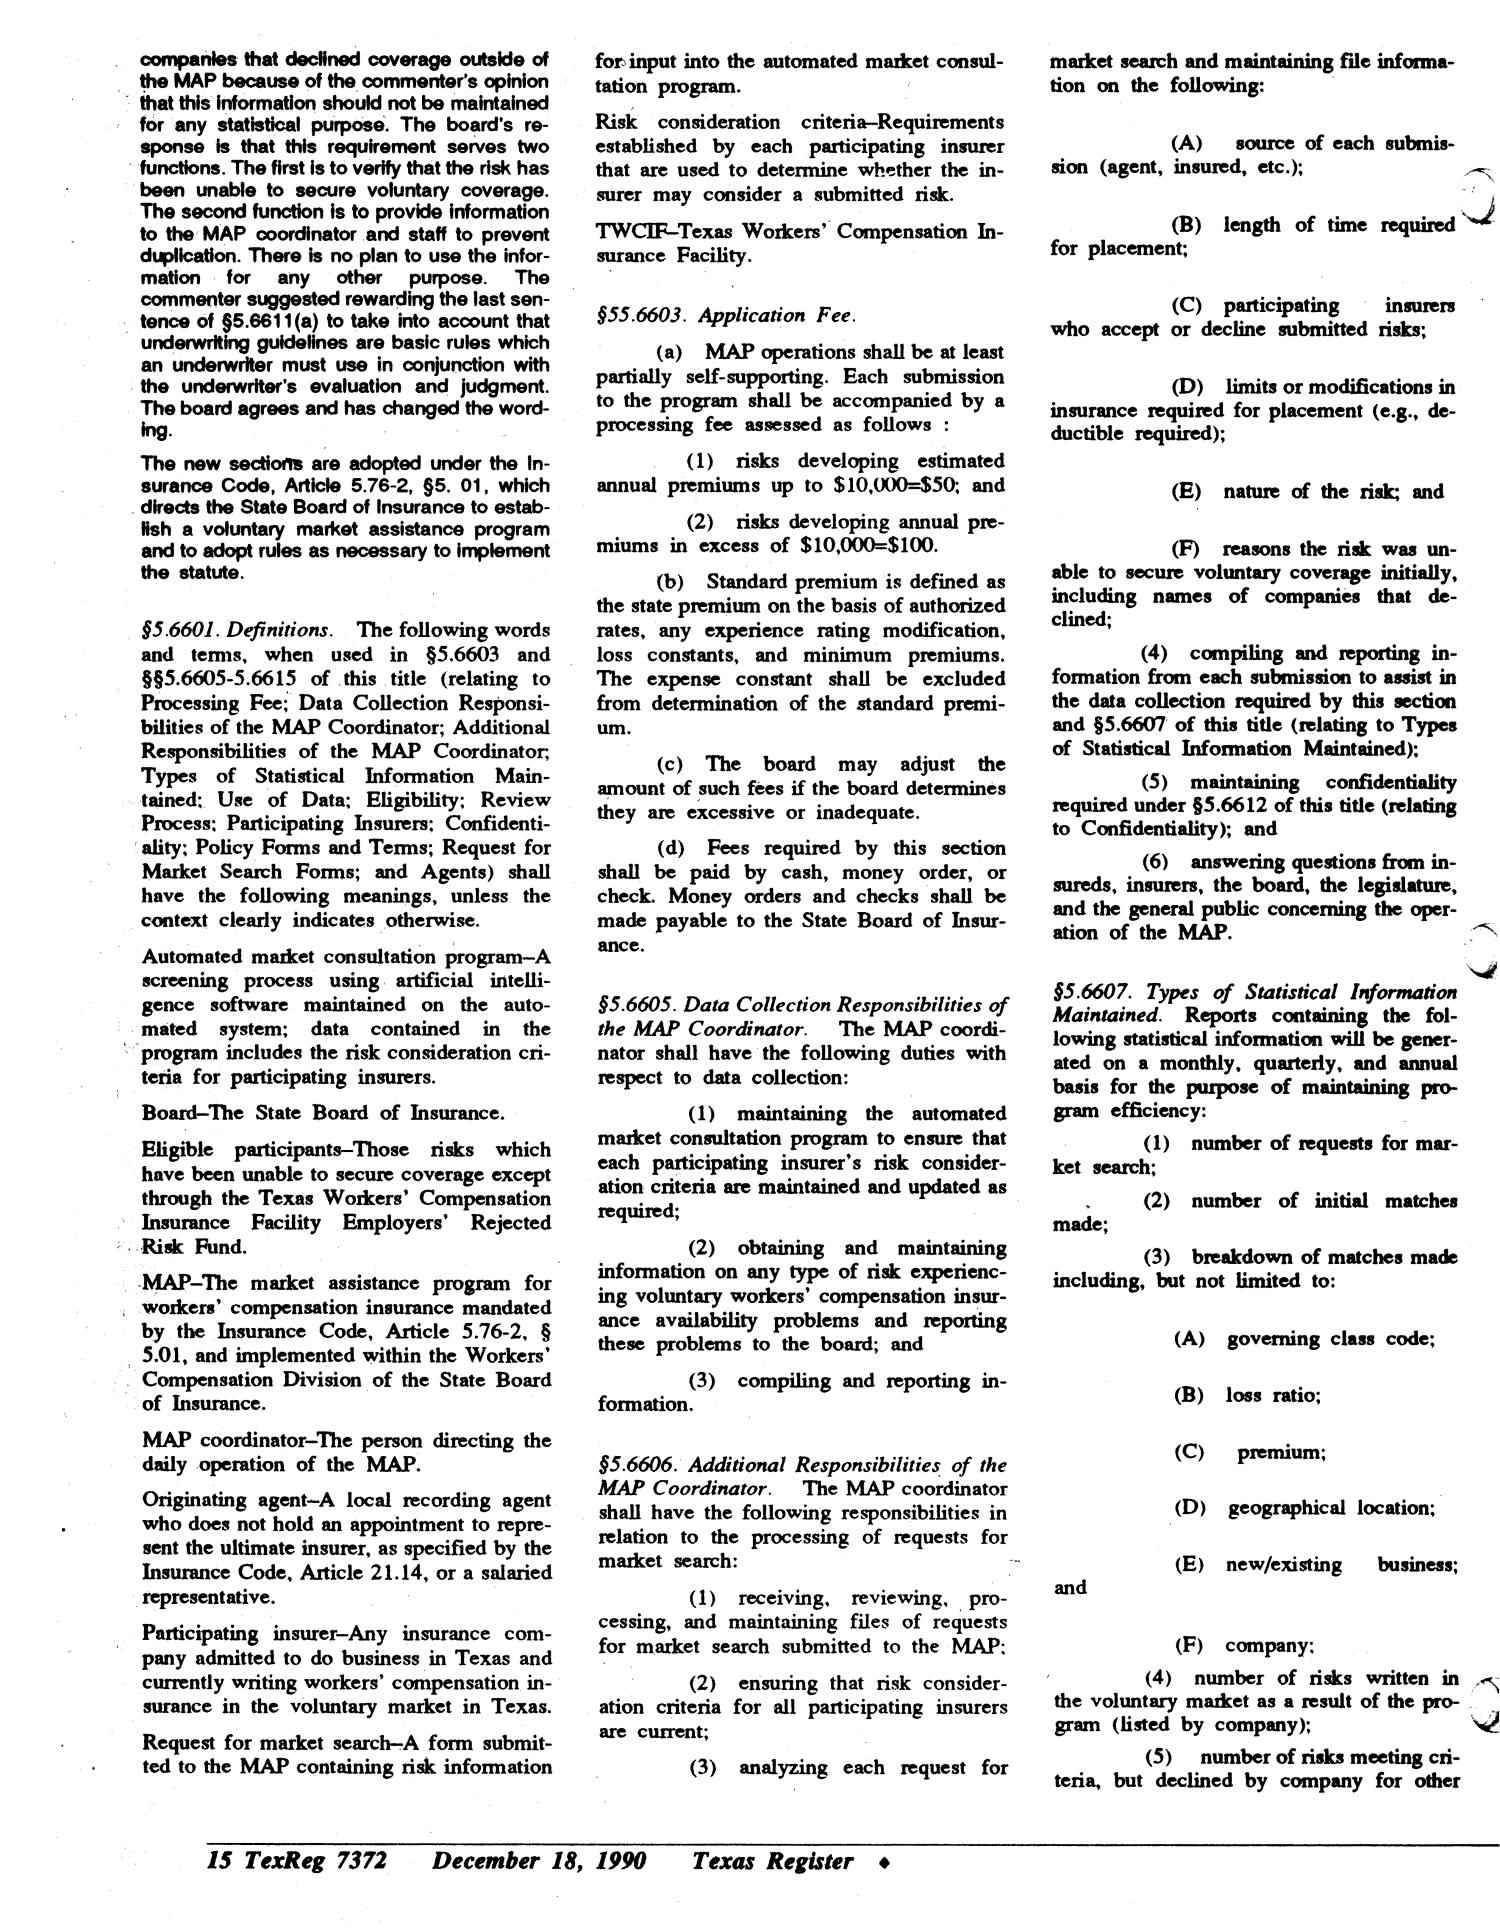 Texas Register, Volume 15, Number 94, (Volume 2), Pages 7361-7389, December 18, 1990
                                                
                                                    7372
                                                